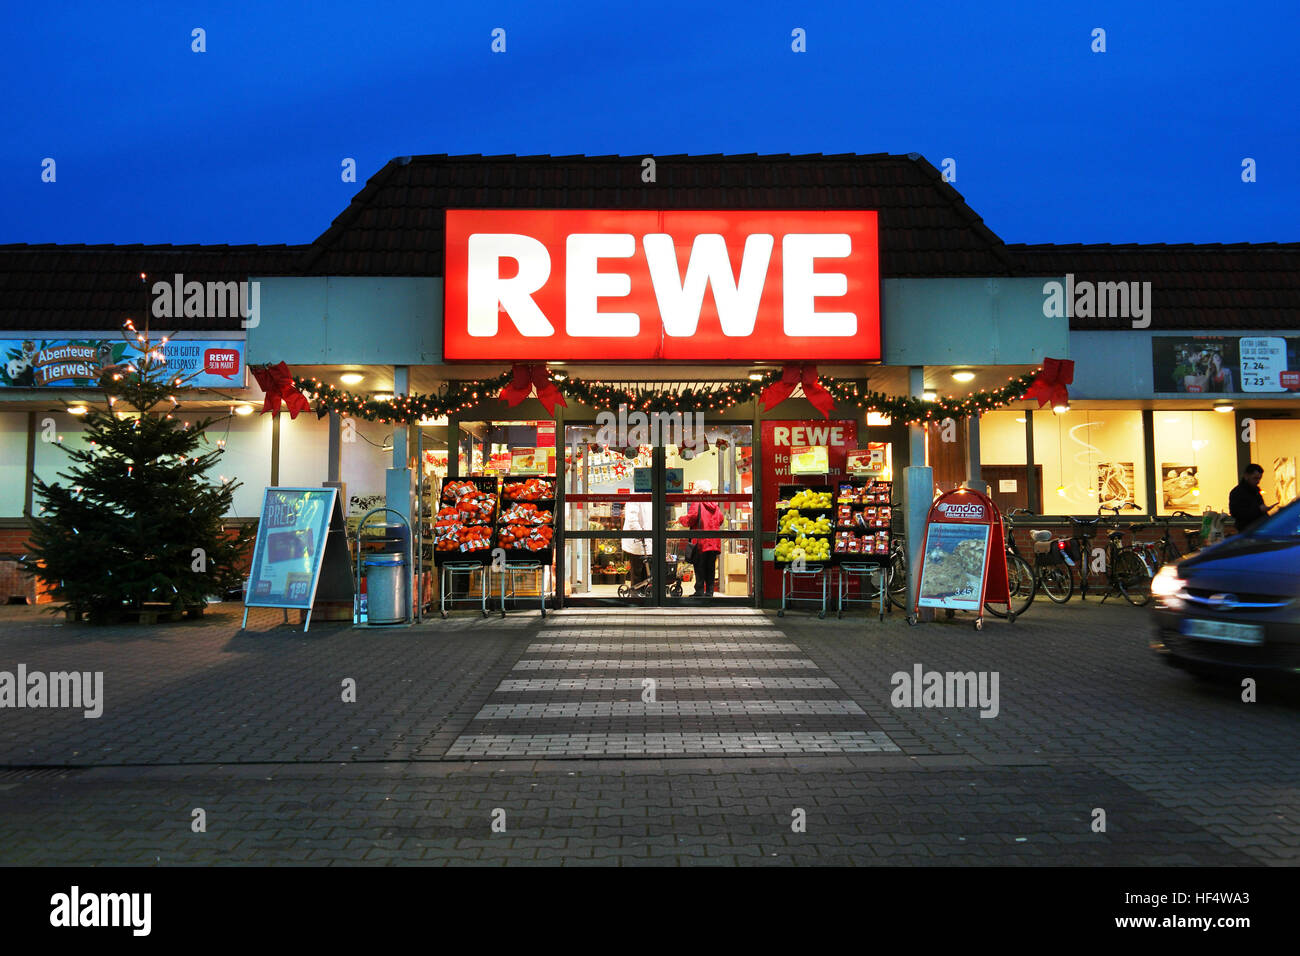 REWE supermercado por la noche durante la época de Navidad Foto de stock